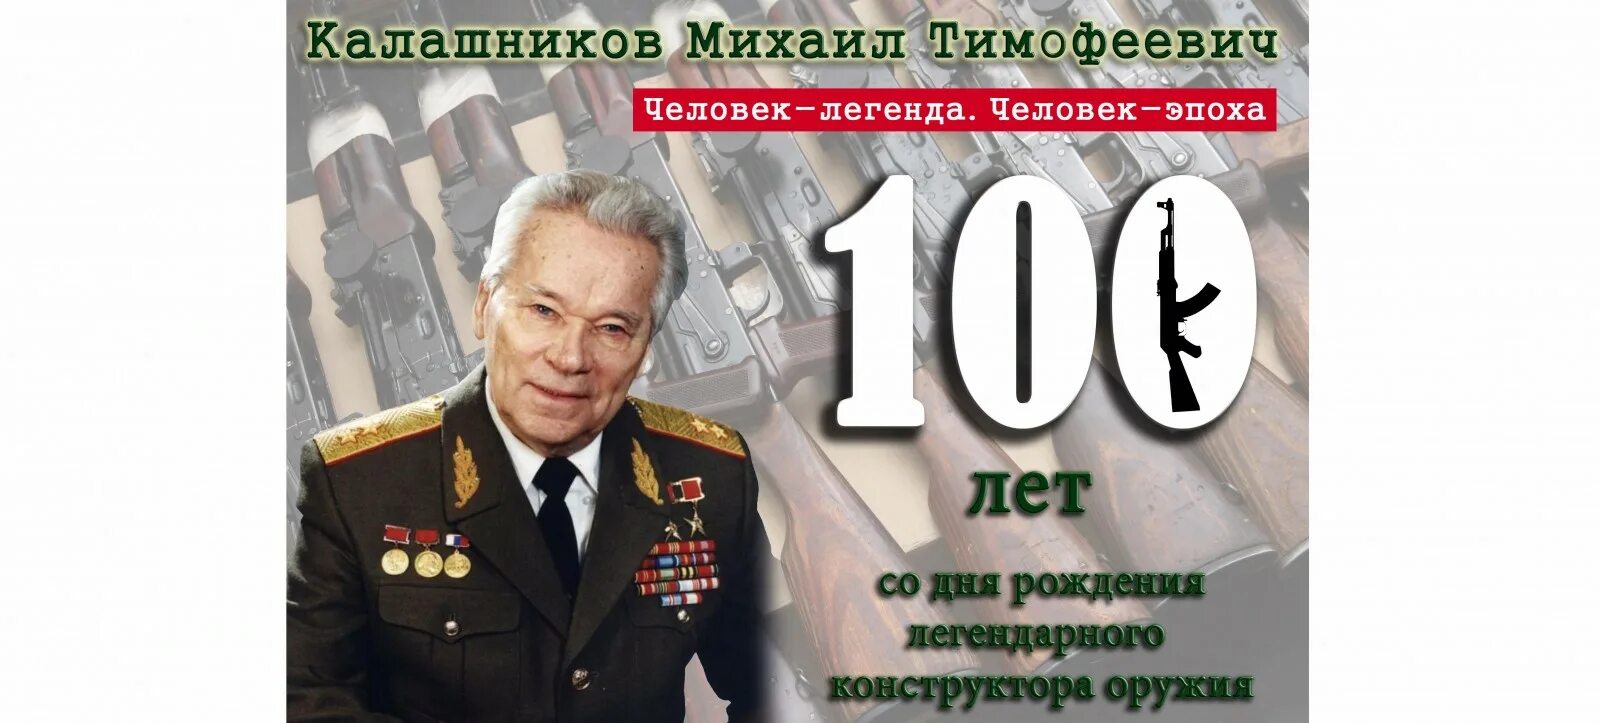 Сто лет длится. День рождения Калашникова 100 лет. 100 Лет со дня рождения.